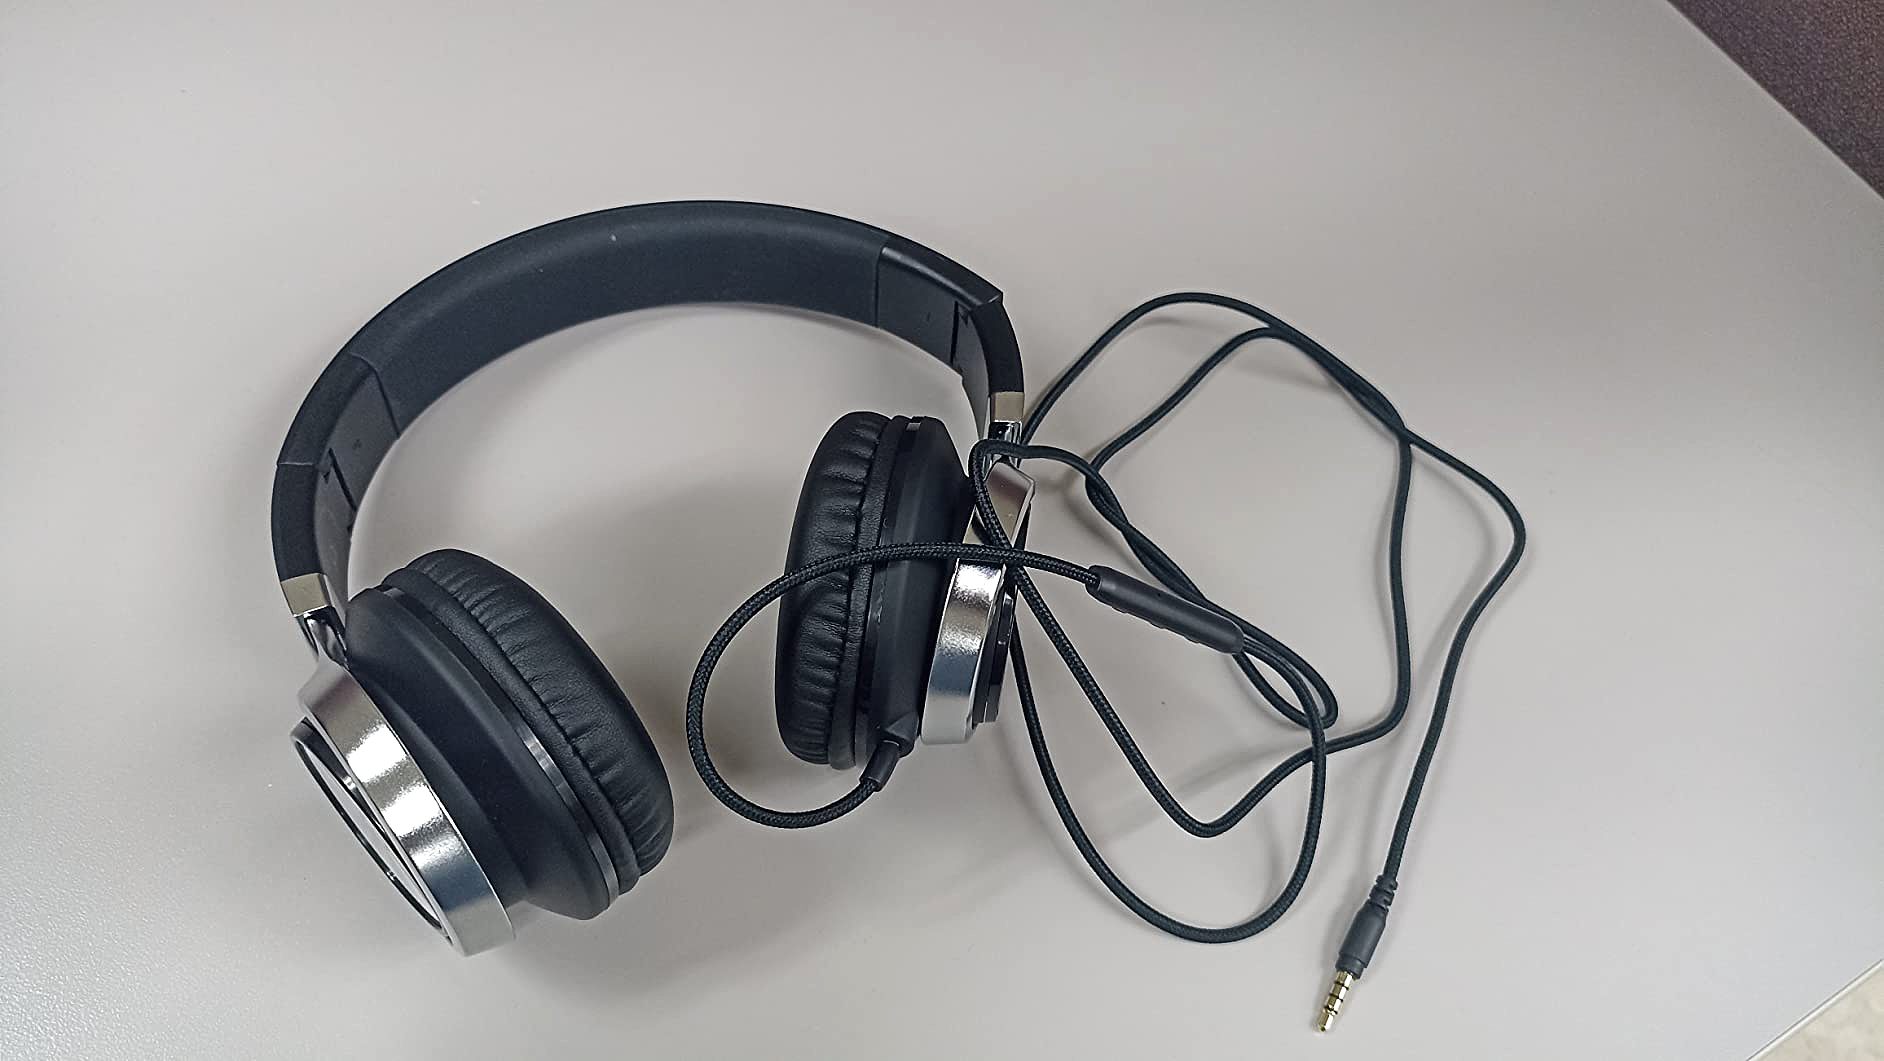  Artix CL750 Wired Headphones   